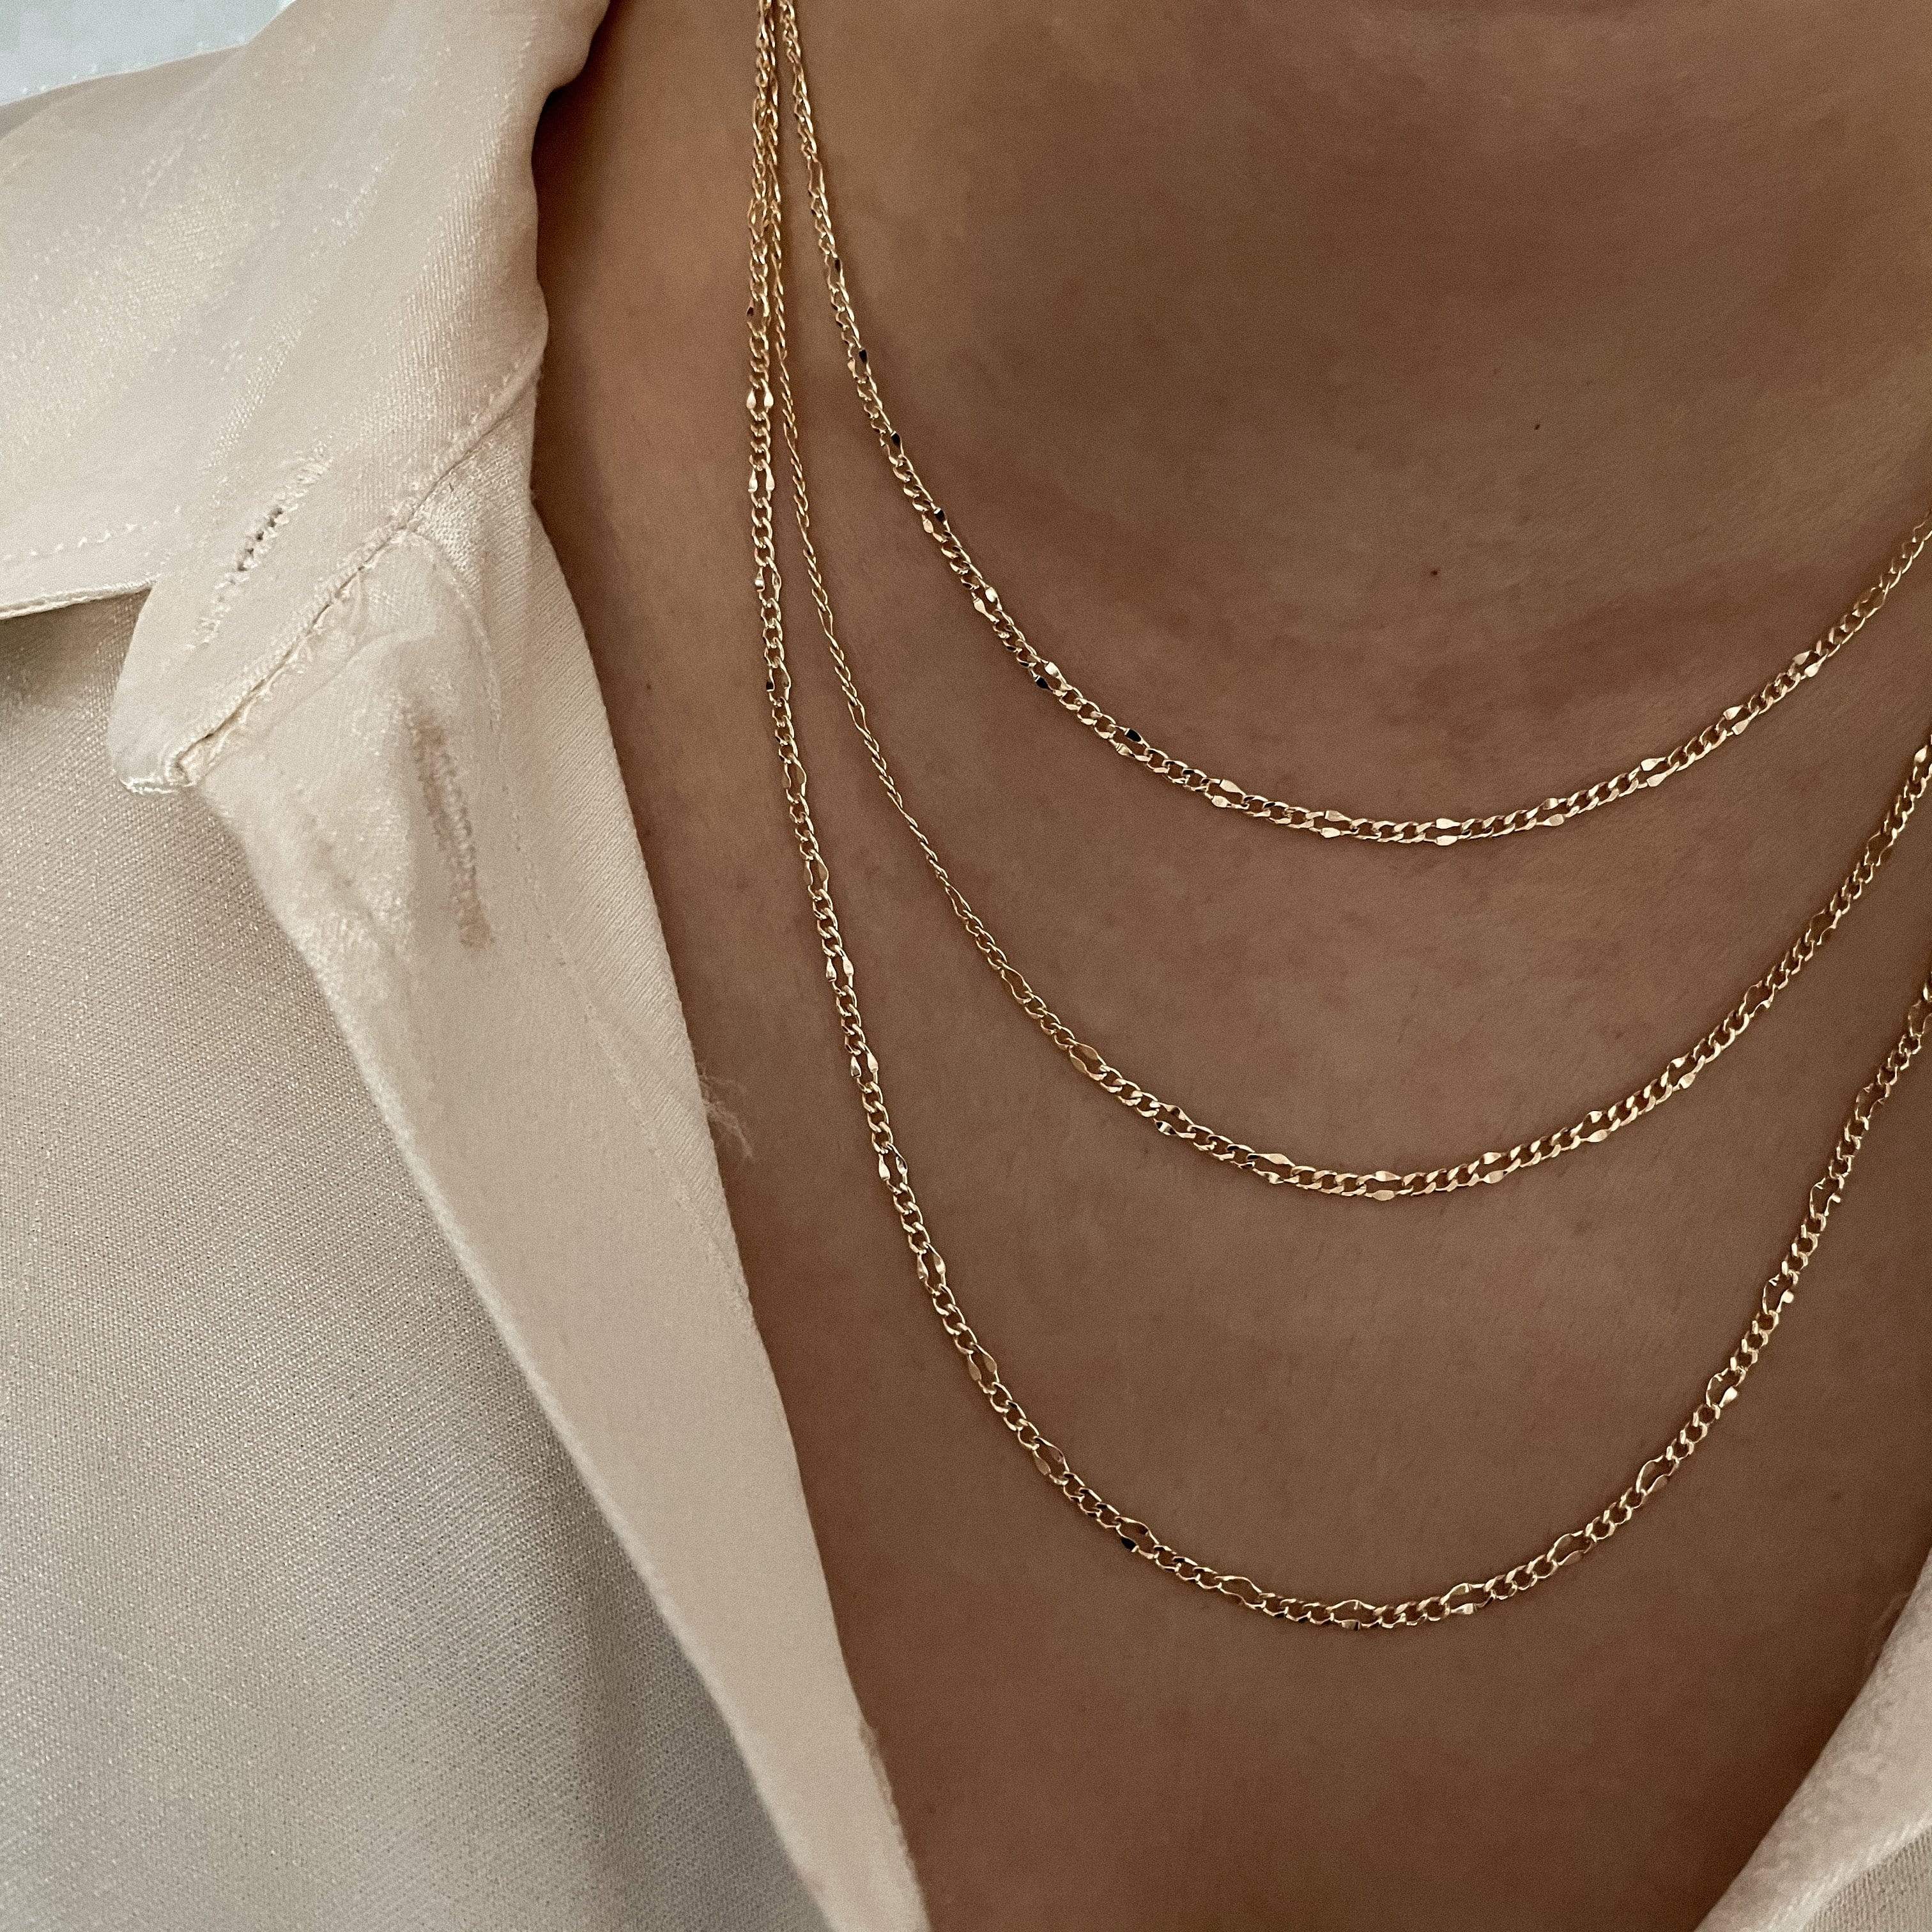 LE sensor necklace Paula Chain Necklace - 20”